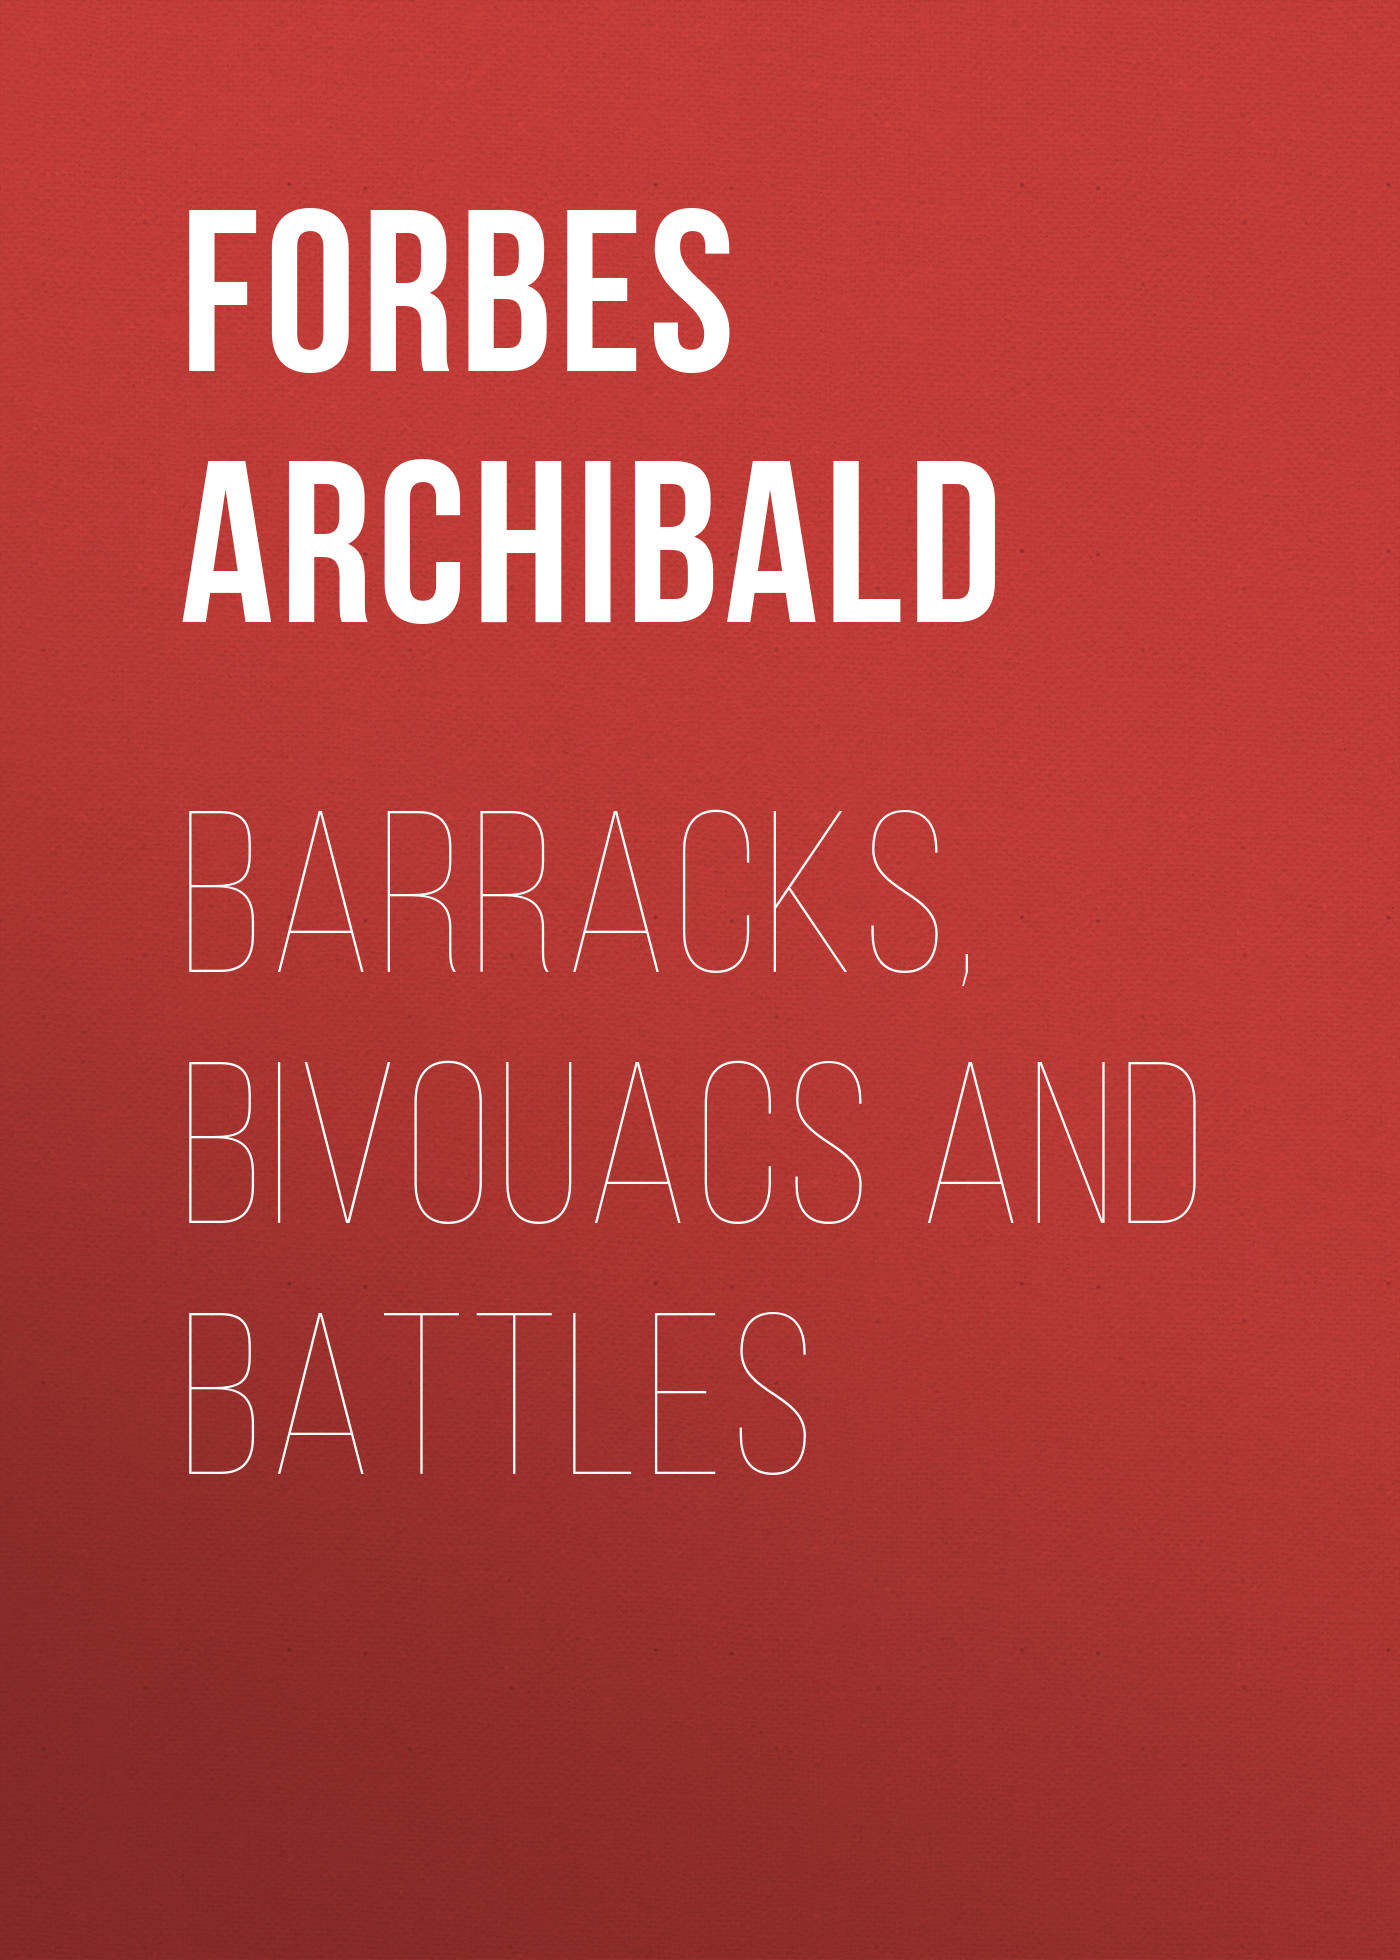 Книга Barracks, Bivouacs and Battles из серии , созданная Archibald Forbes, может относится к жанру Зарубежная старинная литература, Зарубежная классика. Стоимость электронной книги Barracks, Bivouacs and Battles с идентификатором 24727577 составляет 0 руб.